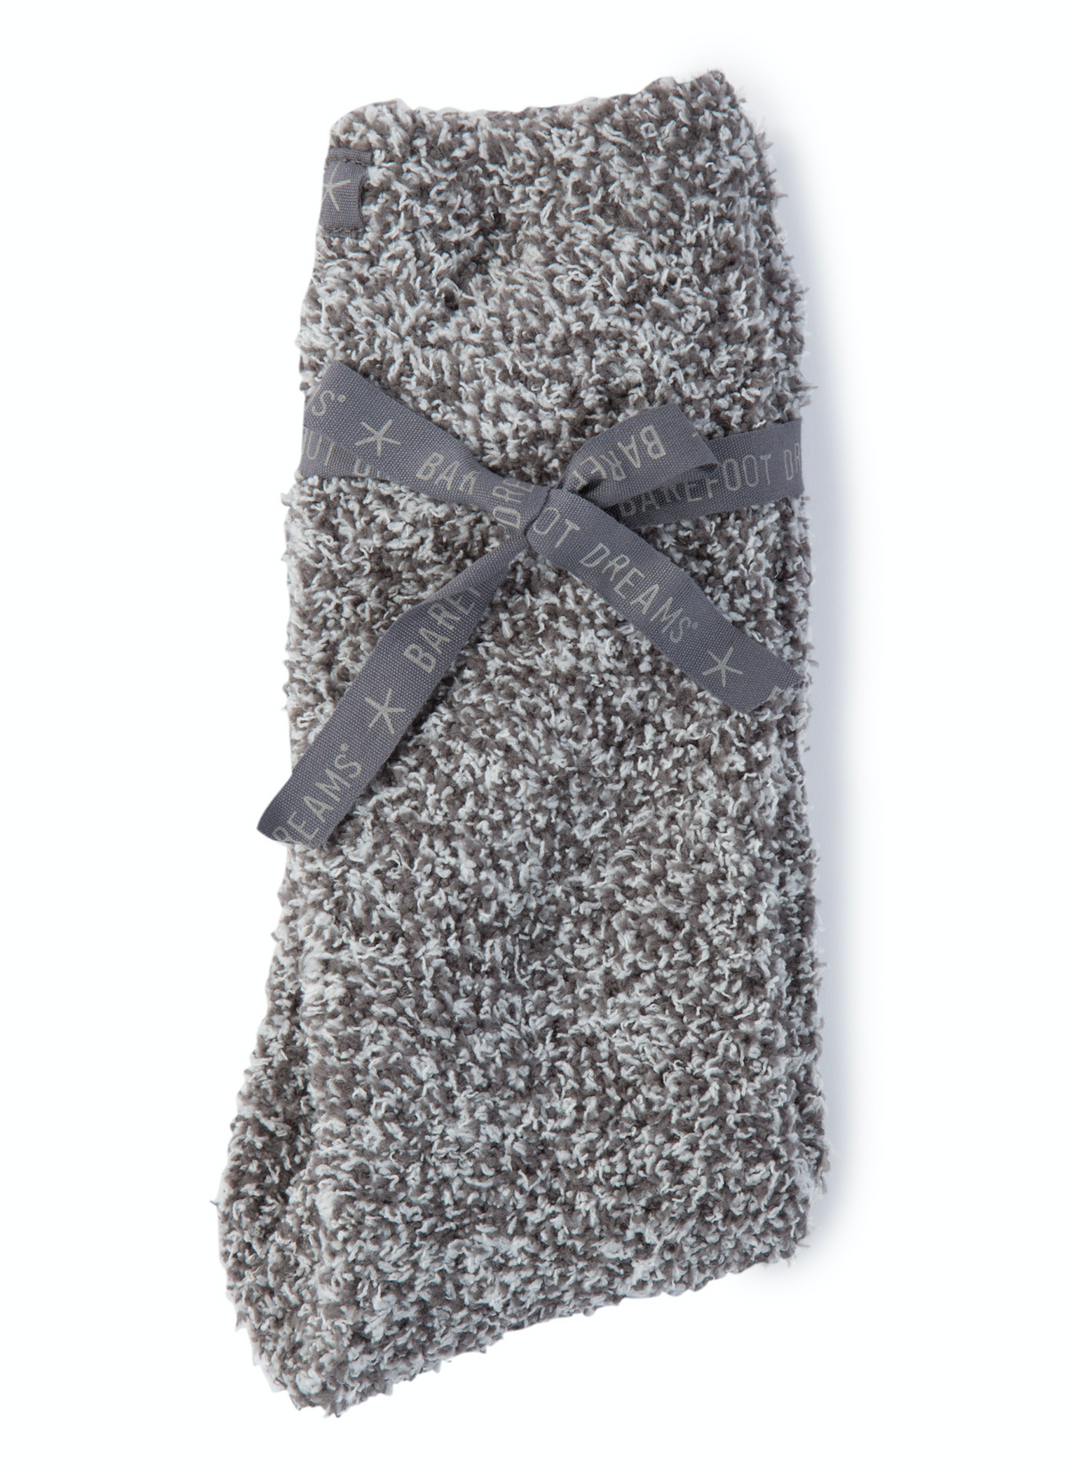 Barefoot Dreams® CozyChic® Women's Ombre Socks, Almond Multi, One